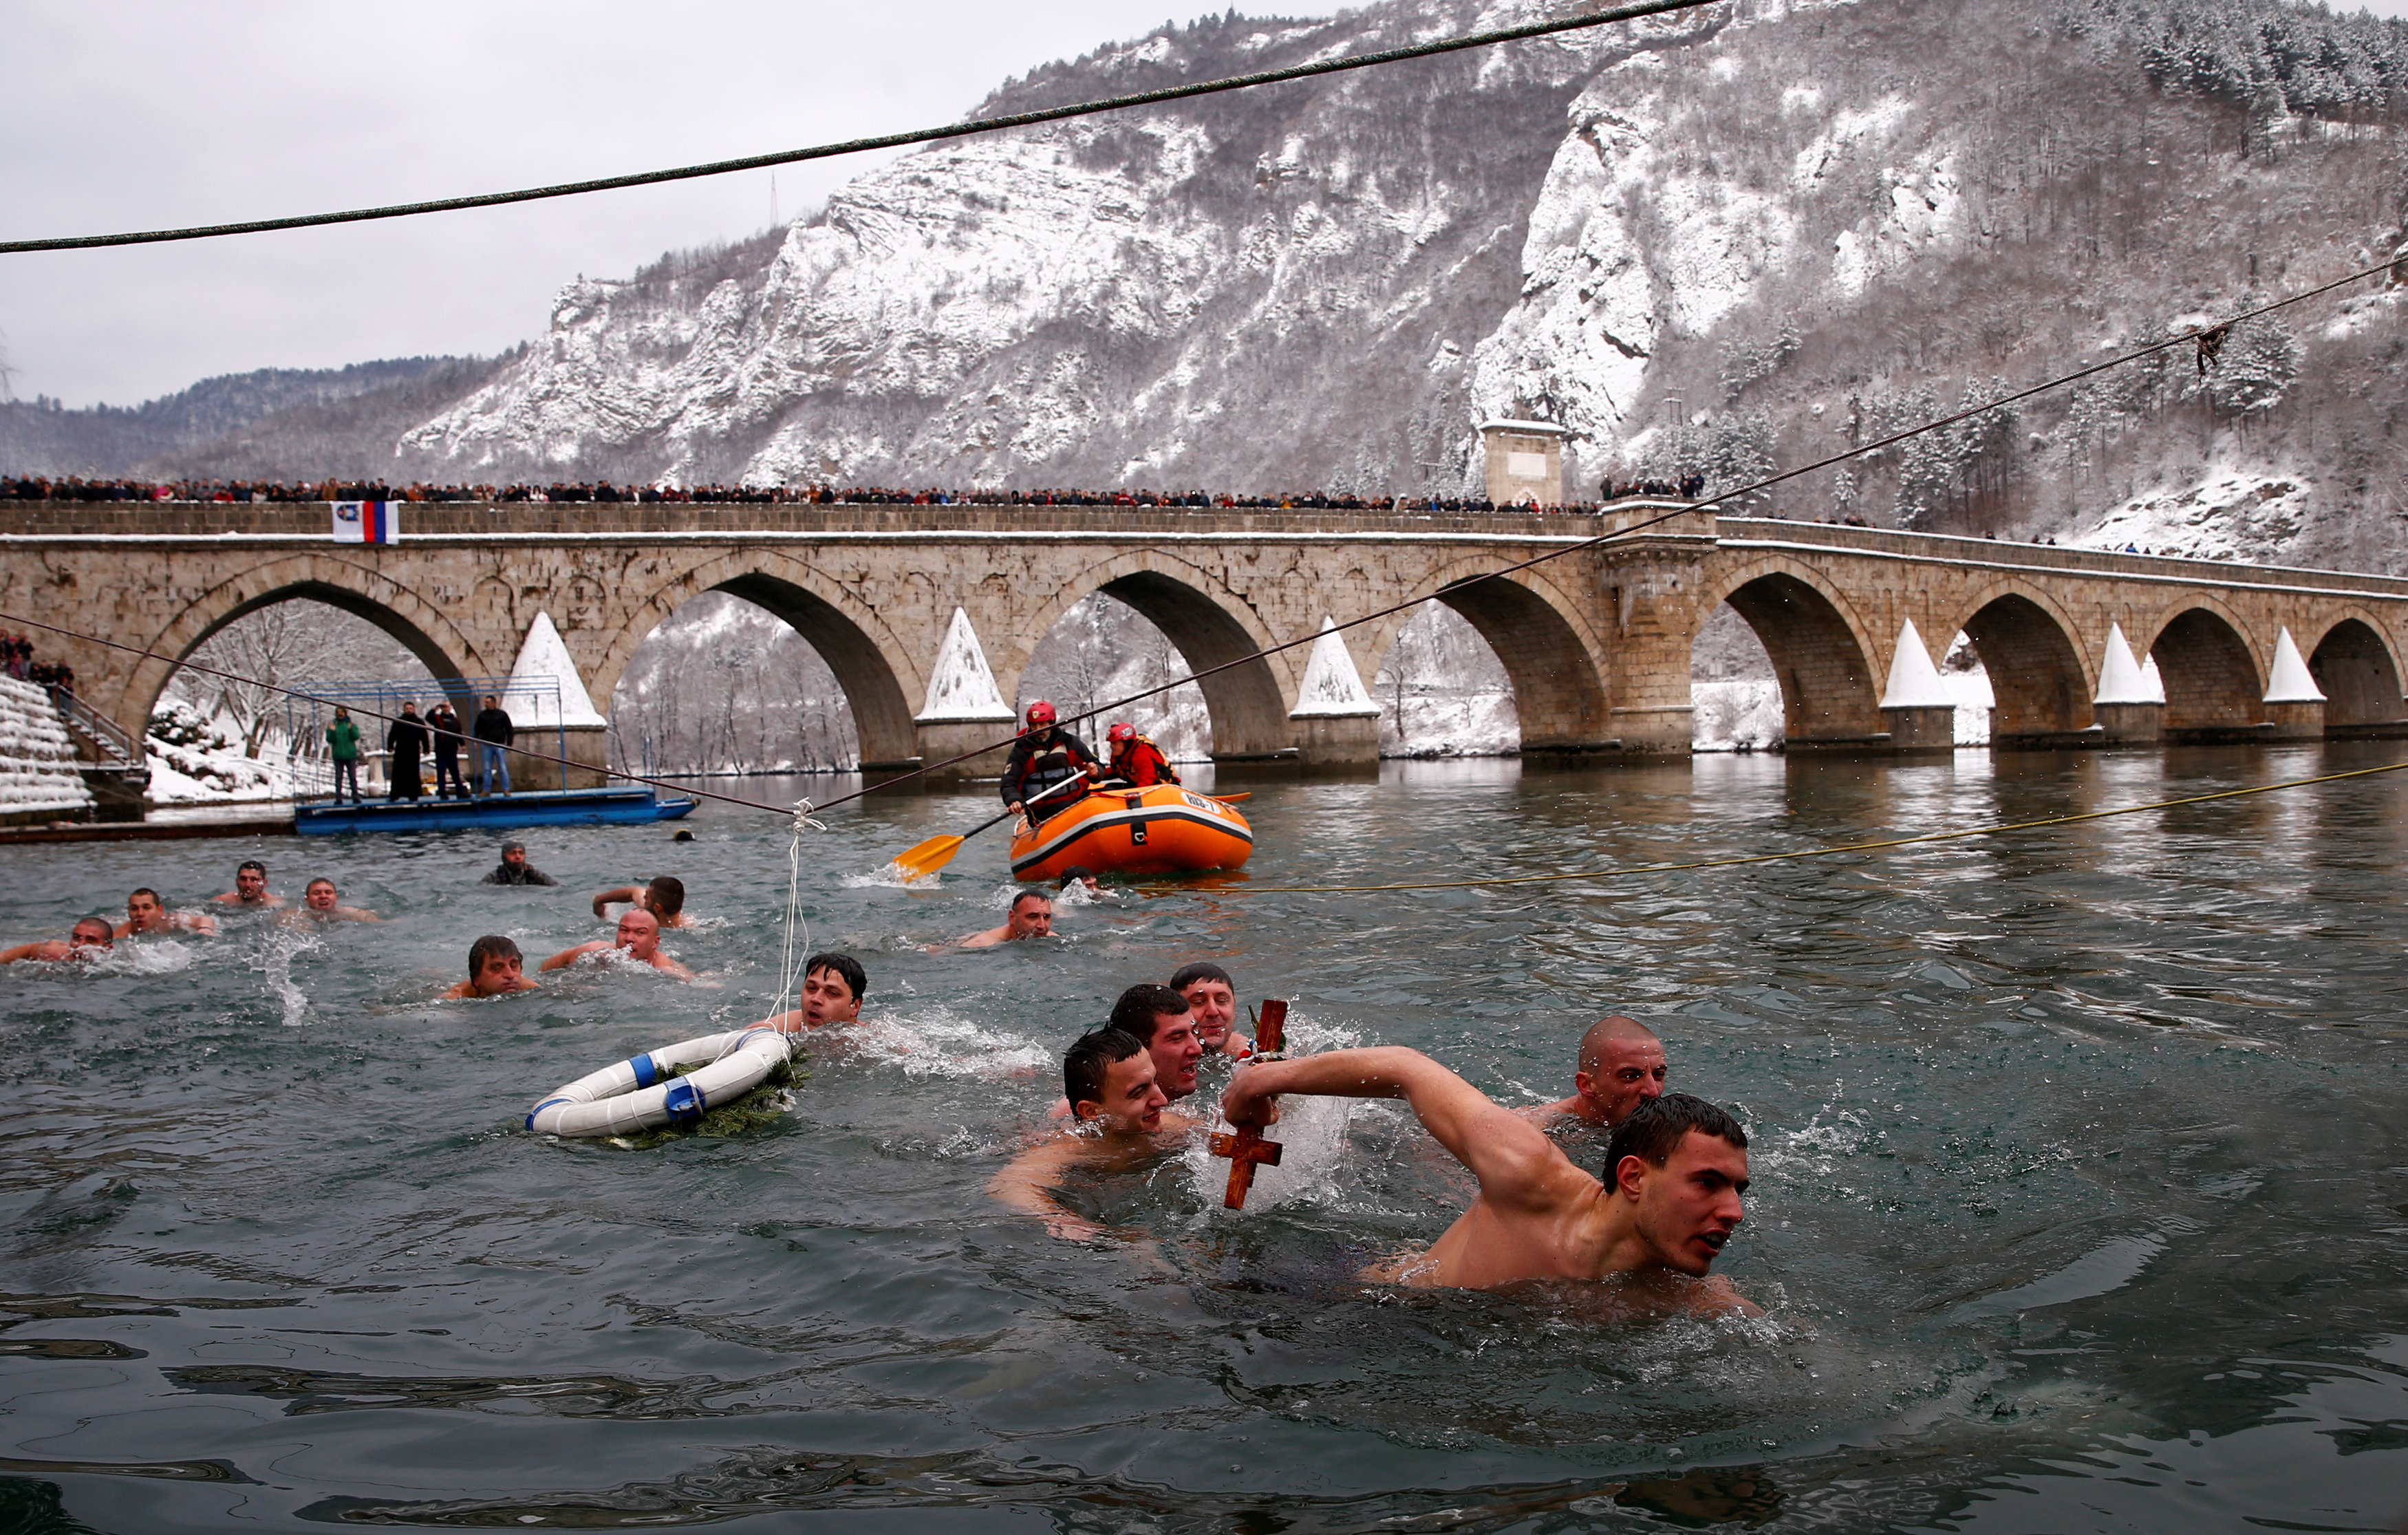 السباحة فى المياة المثلجة عنوان الاحتفال بعيد الغطاس فى البوسنة